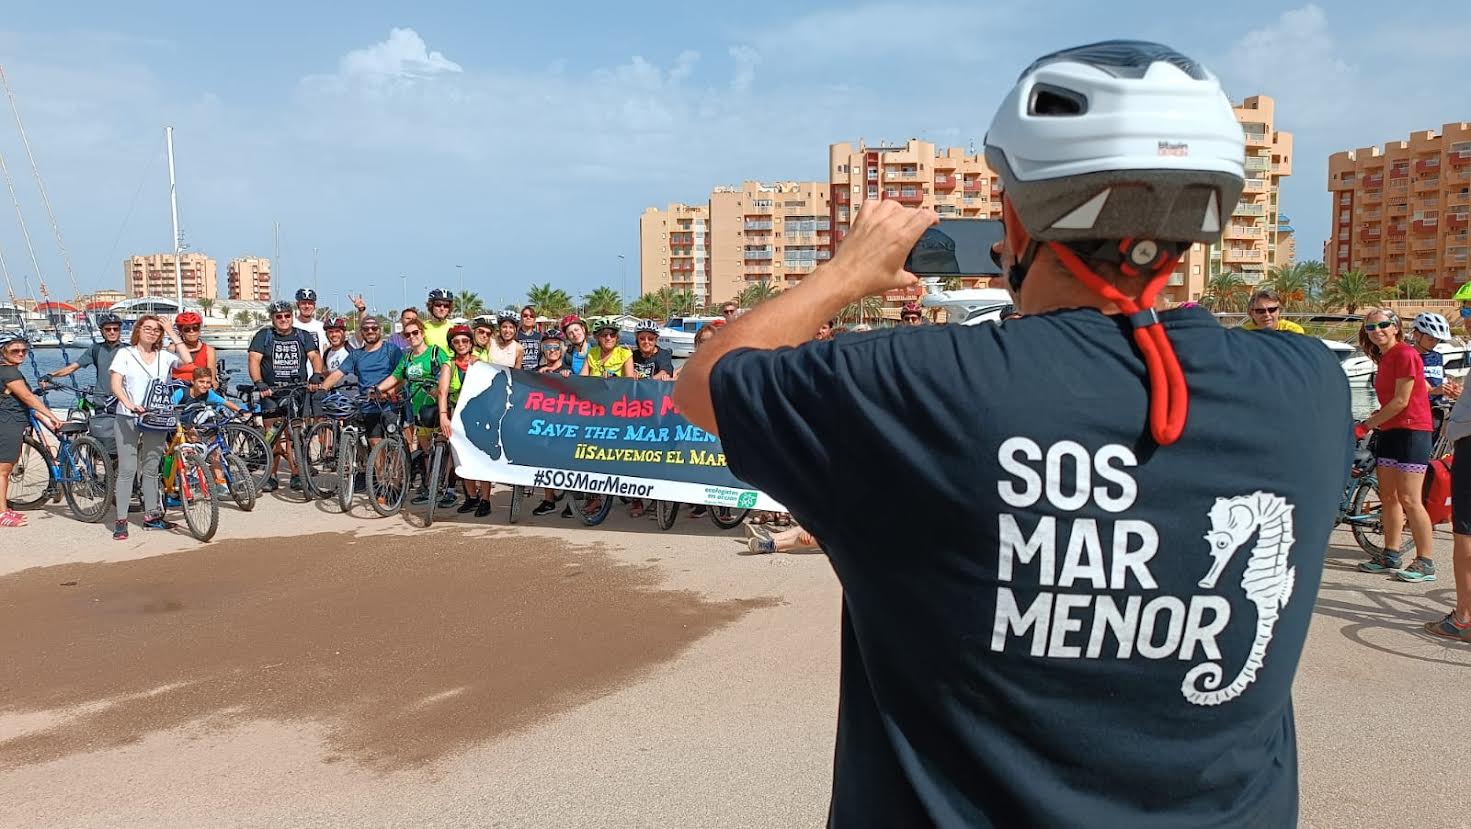 Durante la actividad se exhibió una pancarta en defensa del Mar Menor. Foto: EEA